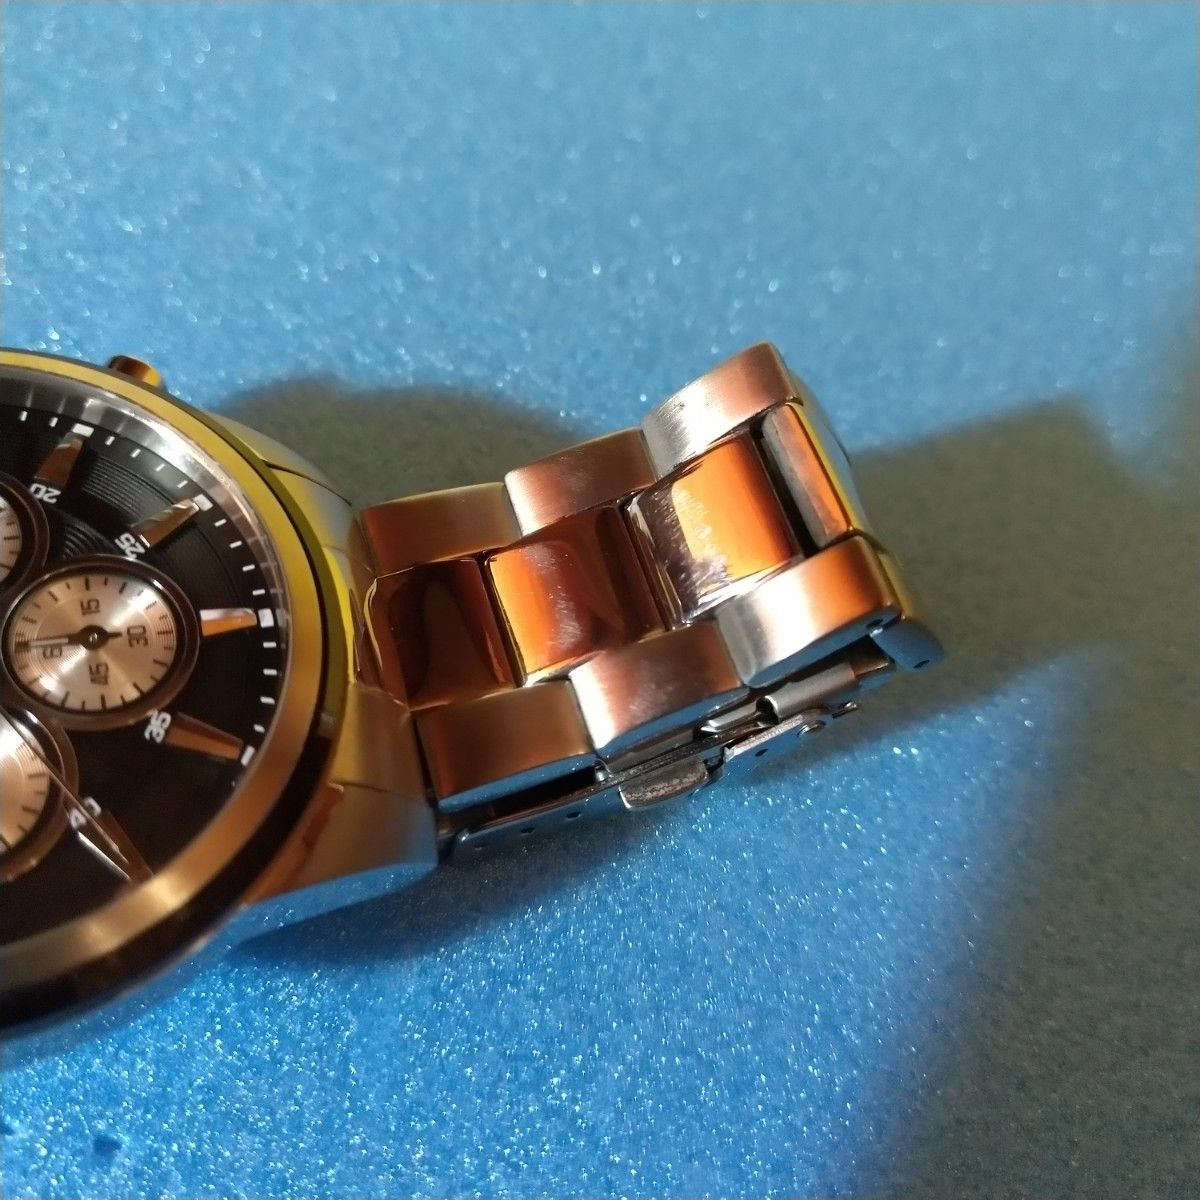 TECHNOS テクノス T6B42 クロノグラフ クオーツ メンズ腕時計